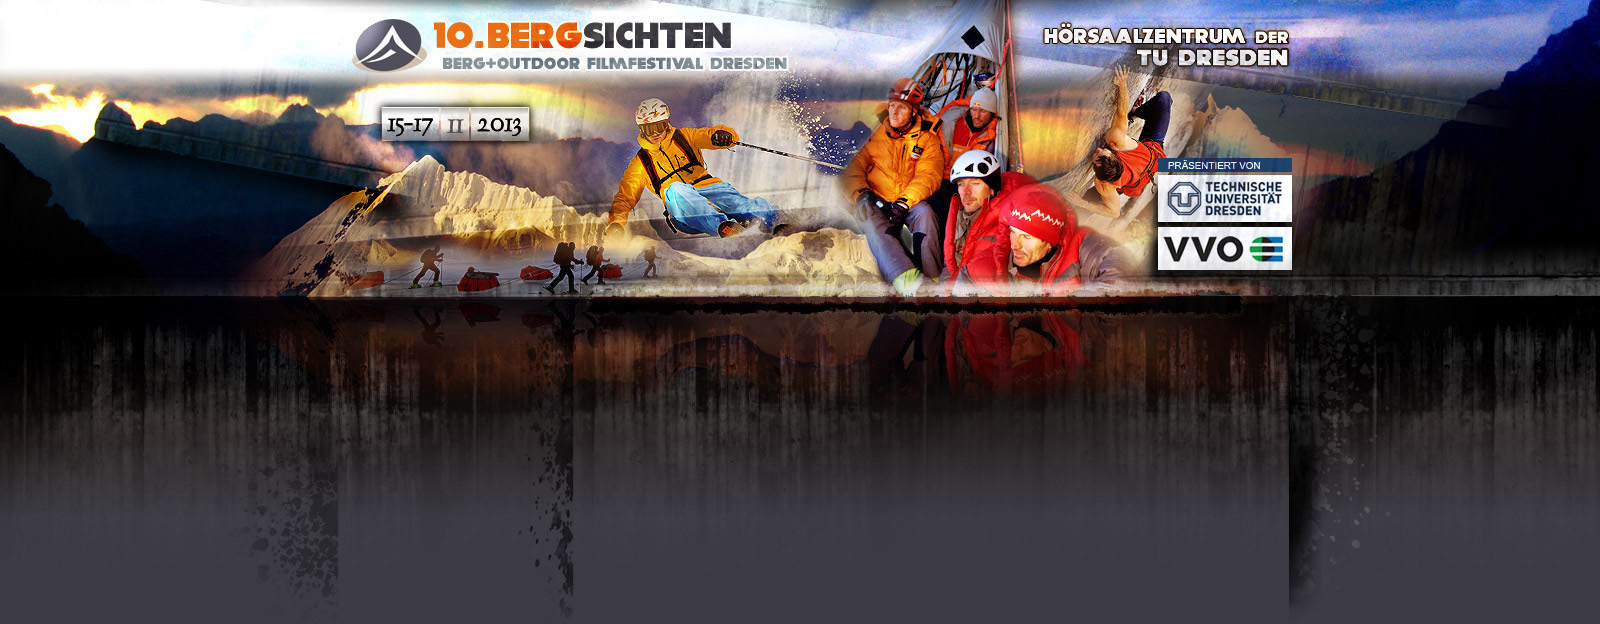 http://www.bergsichten.de/images/webdesign2010/bergsichten2013.jpg